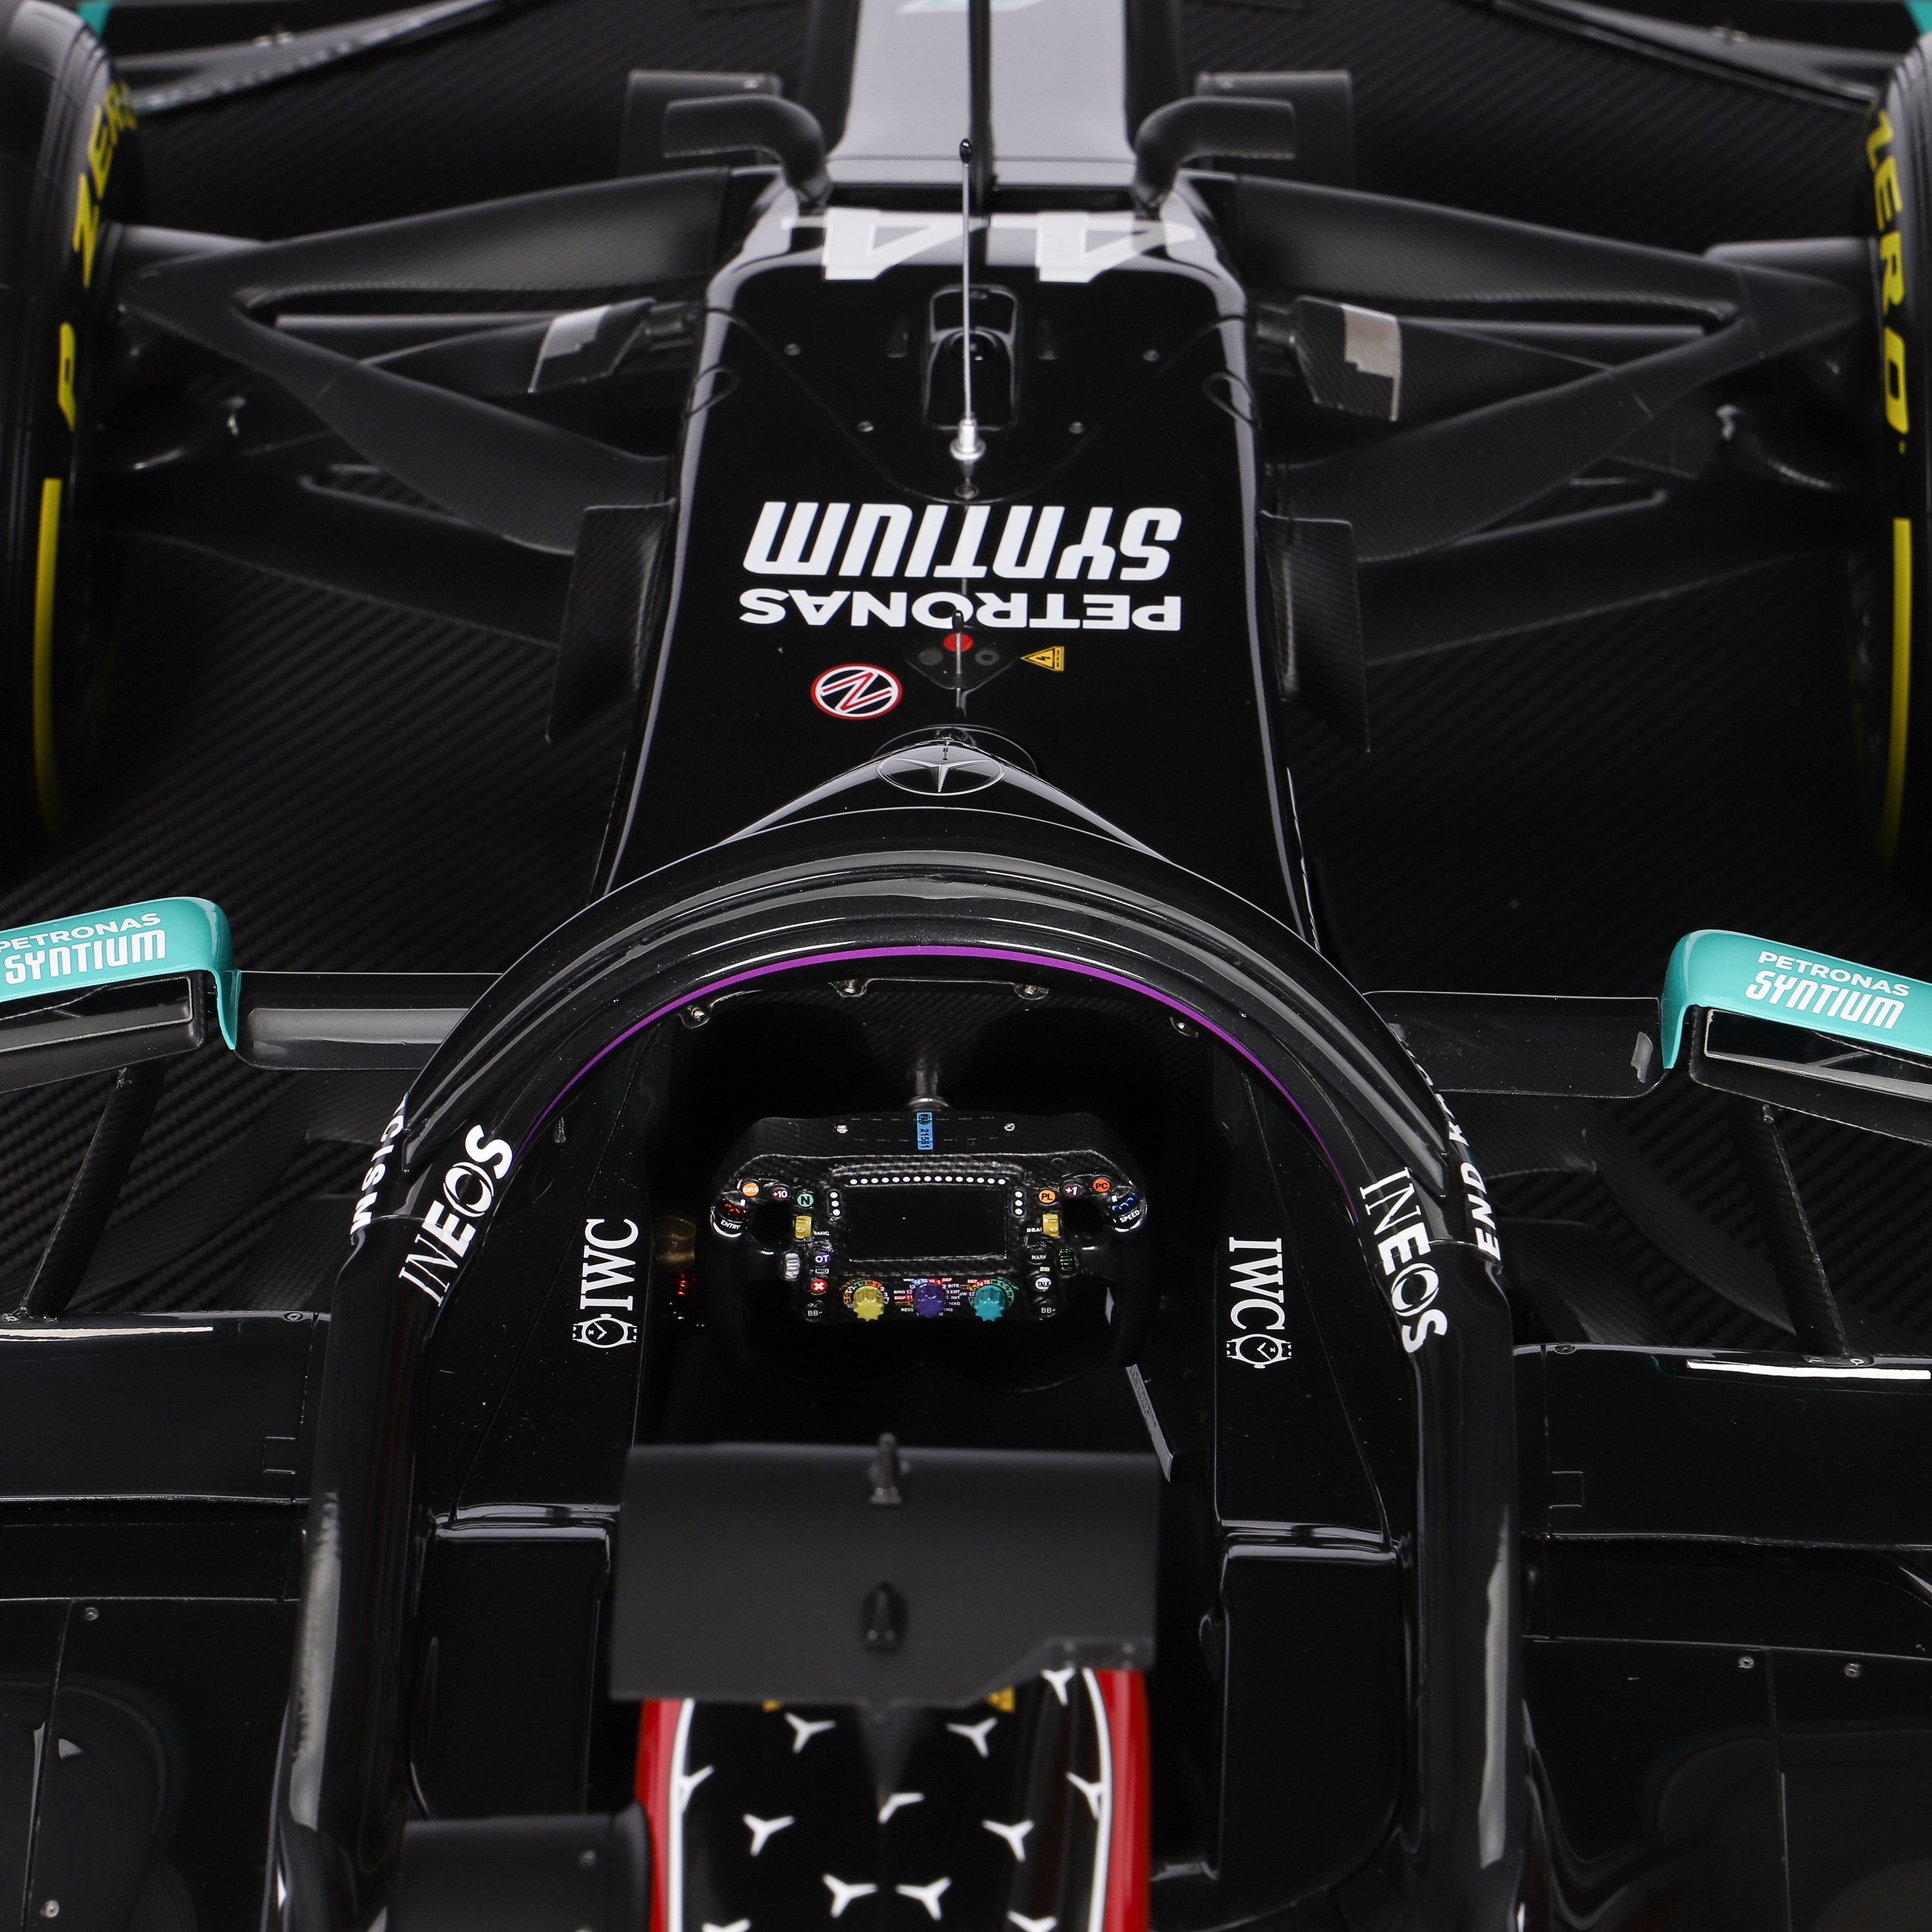 Lewis Hamilton 2020 Mercedes-AMG Petronas F1 Team W11 EQ Performance 1:4 Scale Model